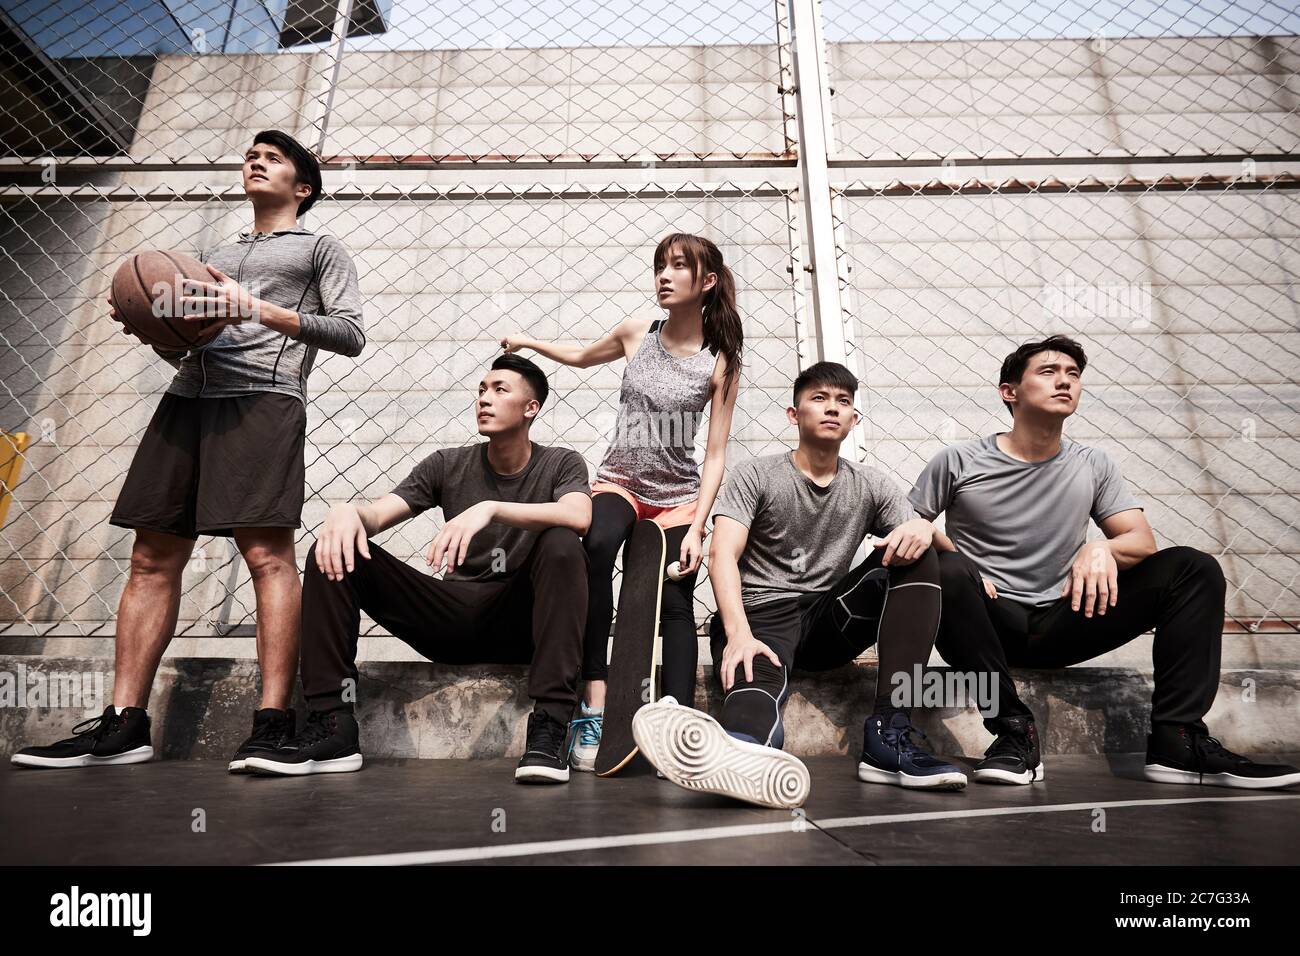 groupe de cinq jeunes adultes asiatiques, hommes et femmes, se reposant sur un terrain de basket-ball extérieur Banque D'Images